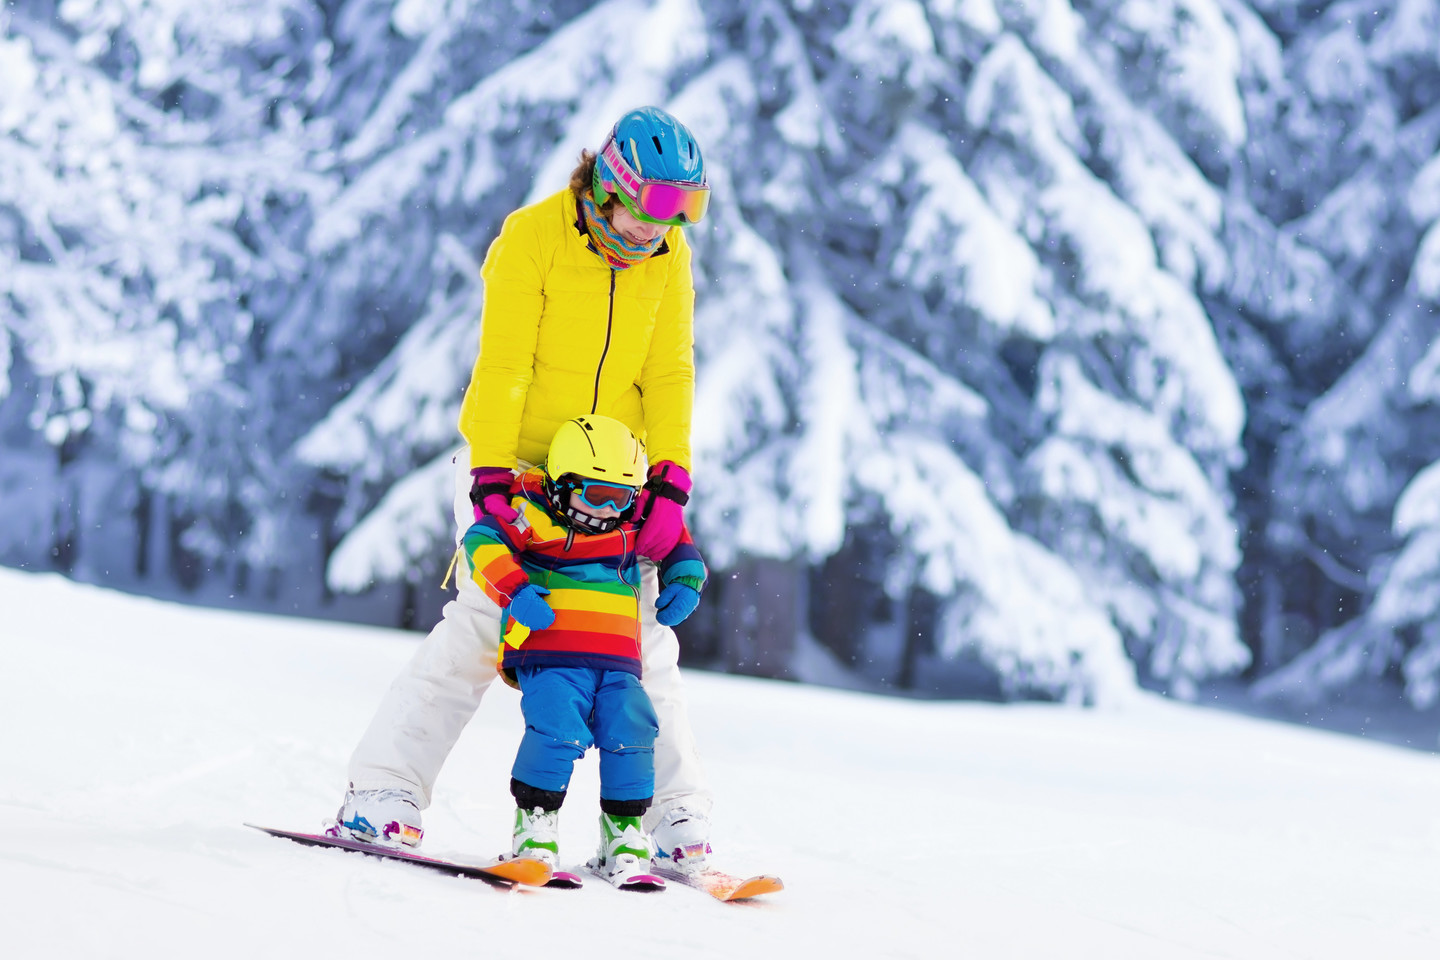 leer krater Briljant Kinderen leren skiën - Hoe leert u kinderen skiën? - Skiën voor kinderen